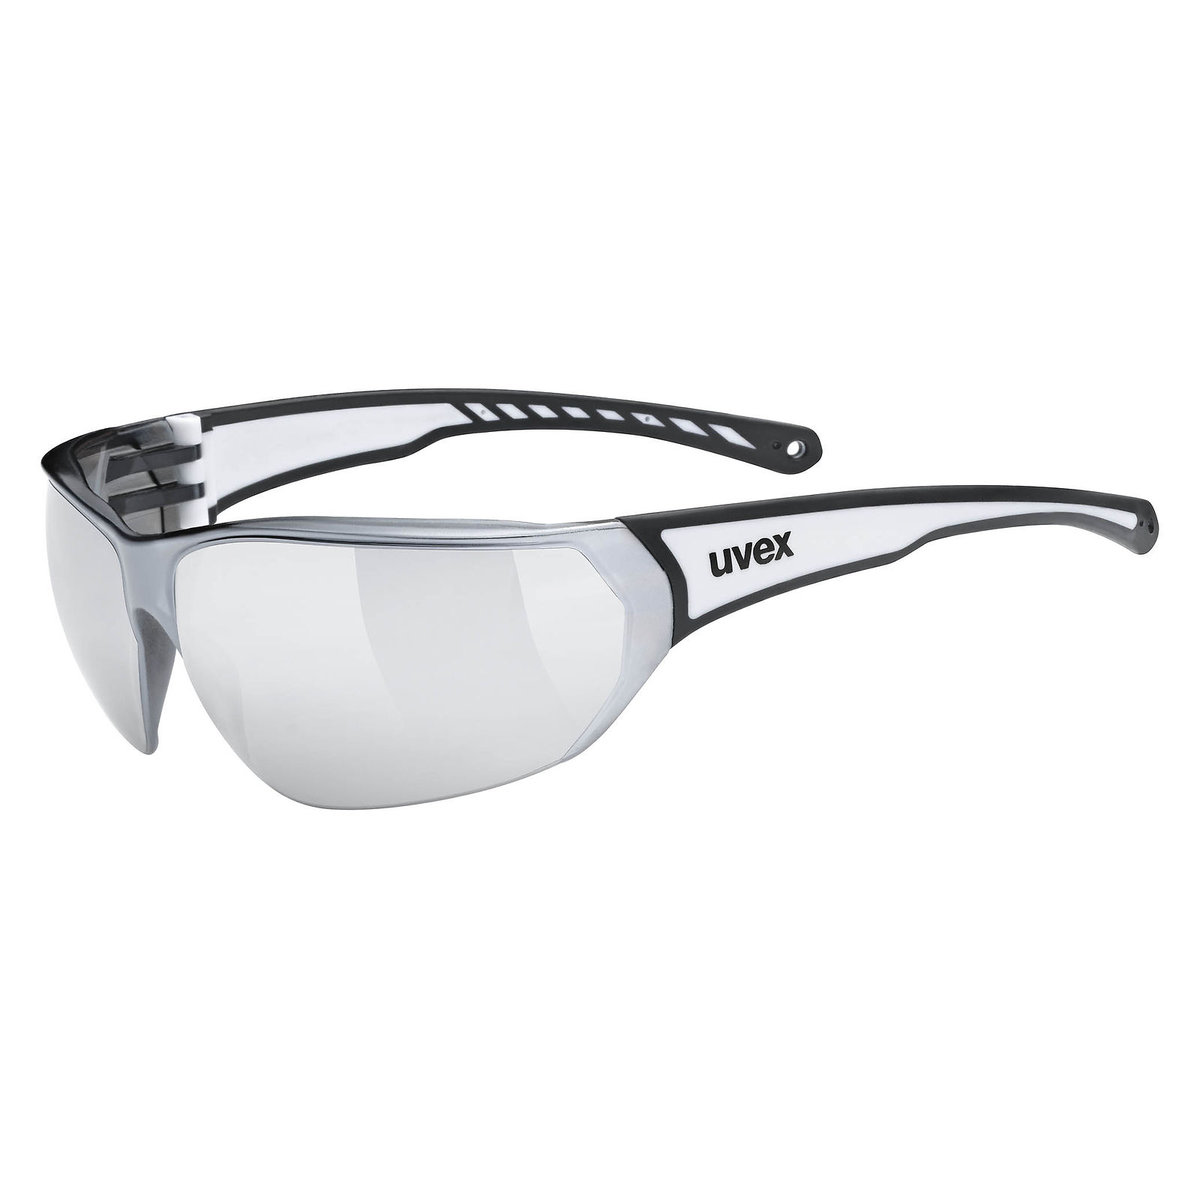 UVEX UVEX Sportstyle 204 Glasses, pomarańczowy/czarny  2022 Okulary S5305252316